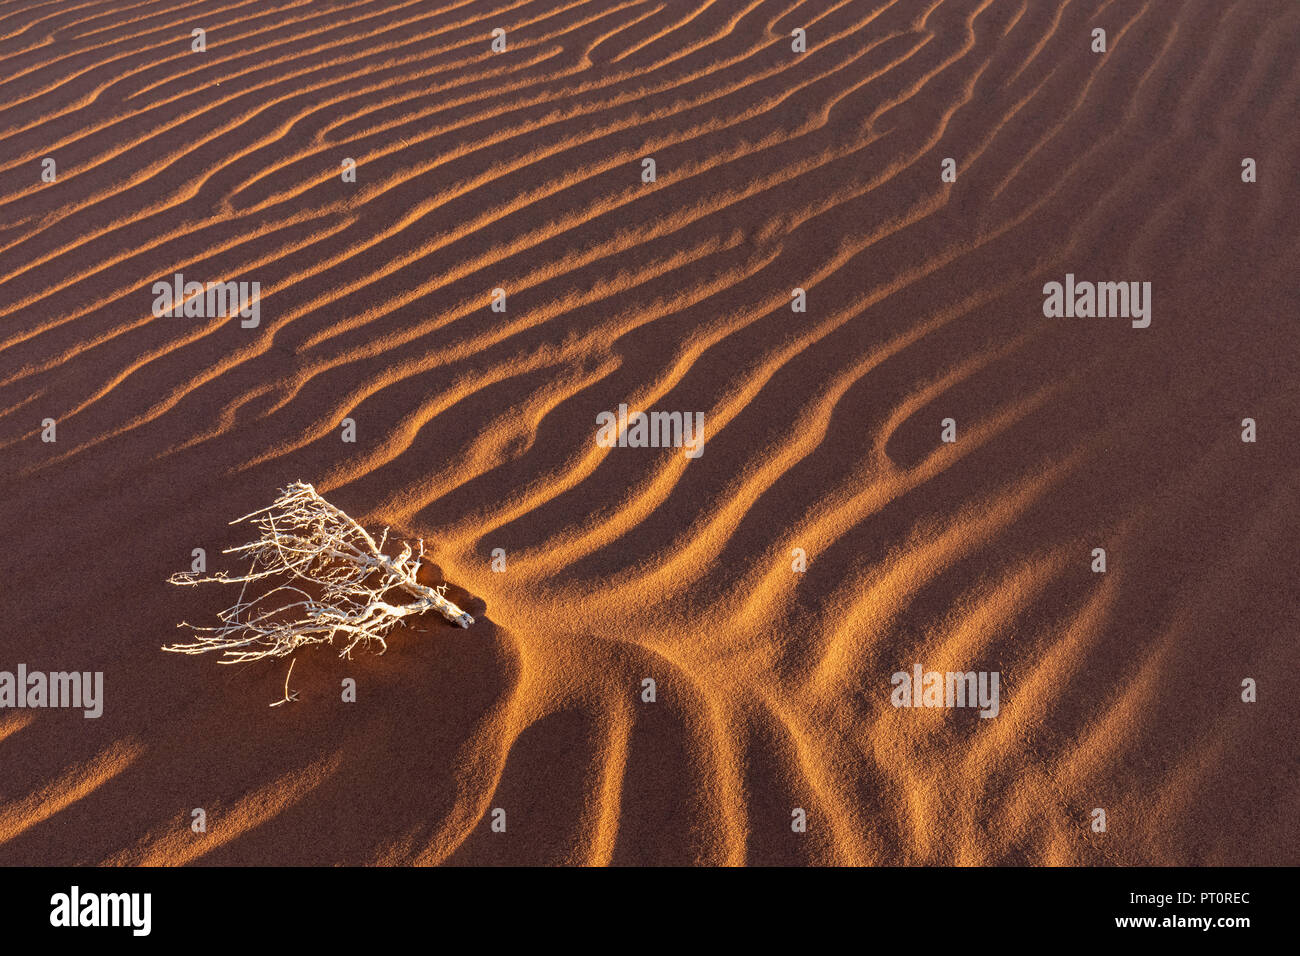 Africa, Namibia, Namib desert, Naukluft National Park, dead bush on sand dune Stock Photo